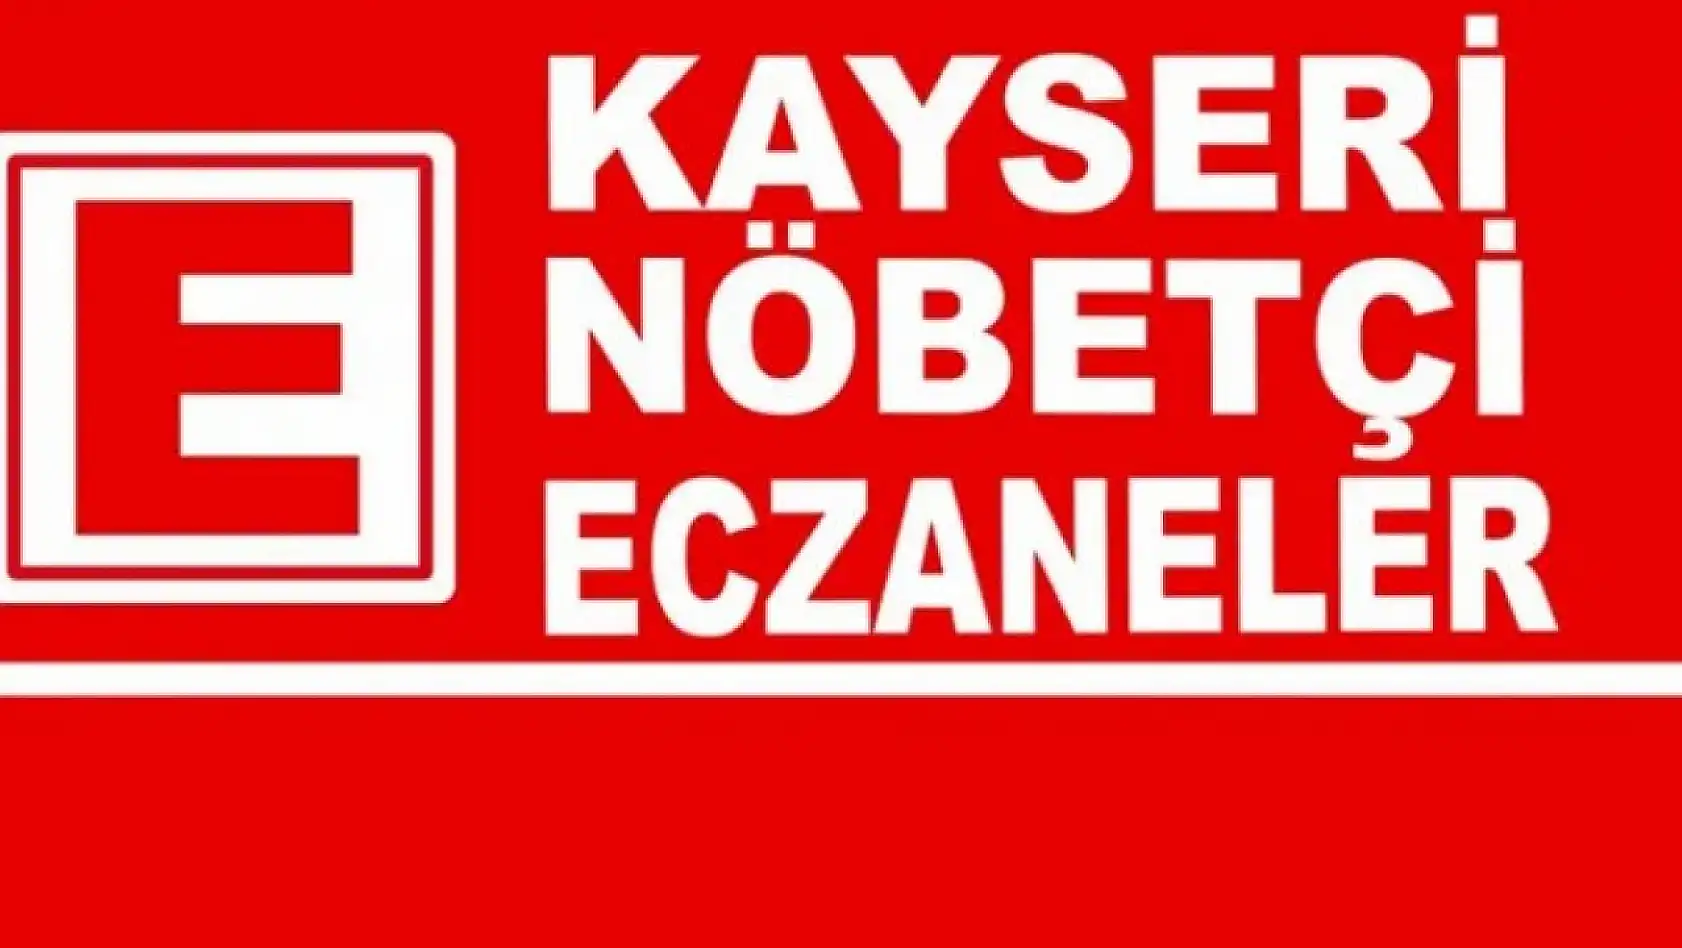 Kayseri'de bugün 22 eczane nöbetçi